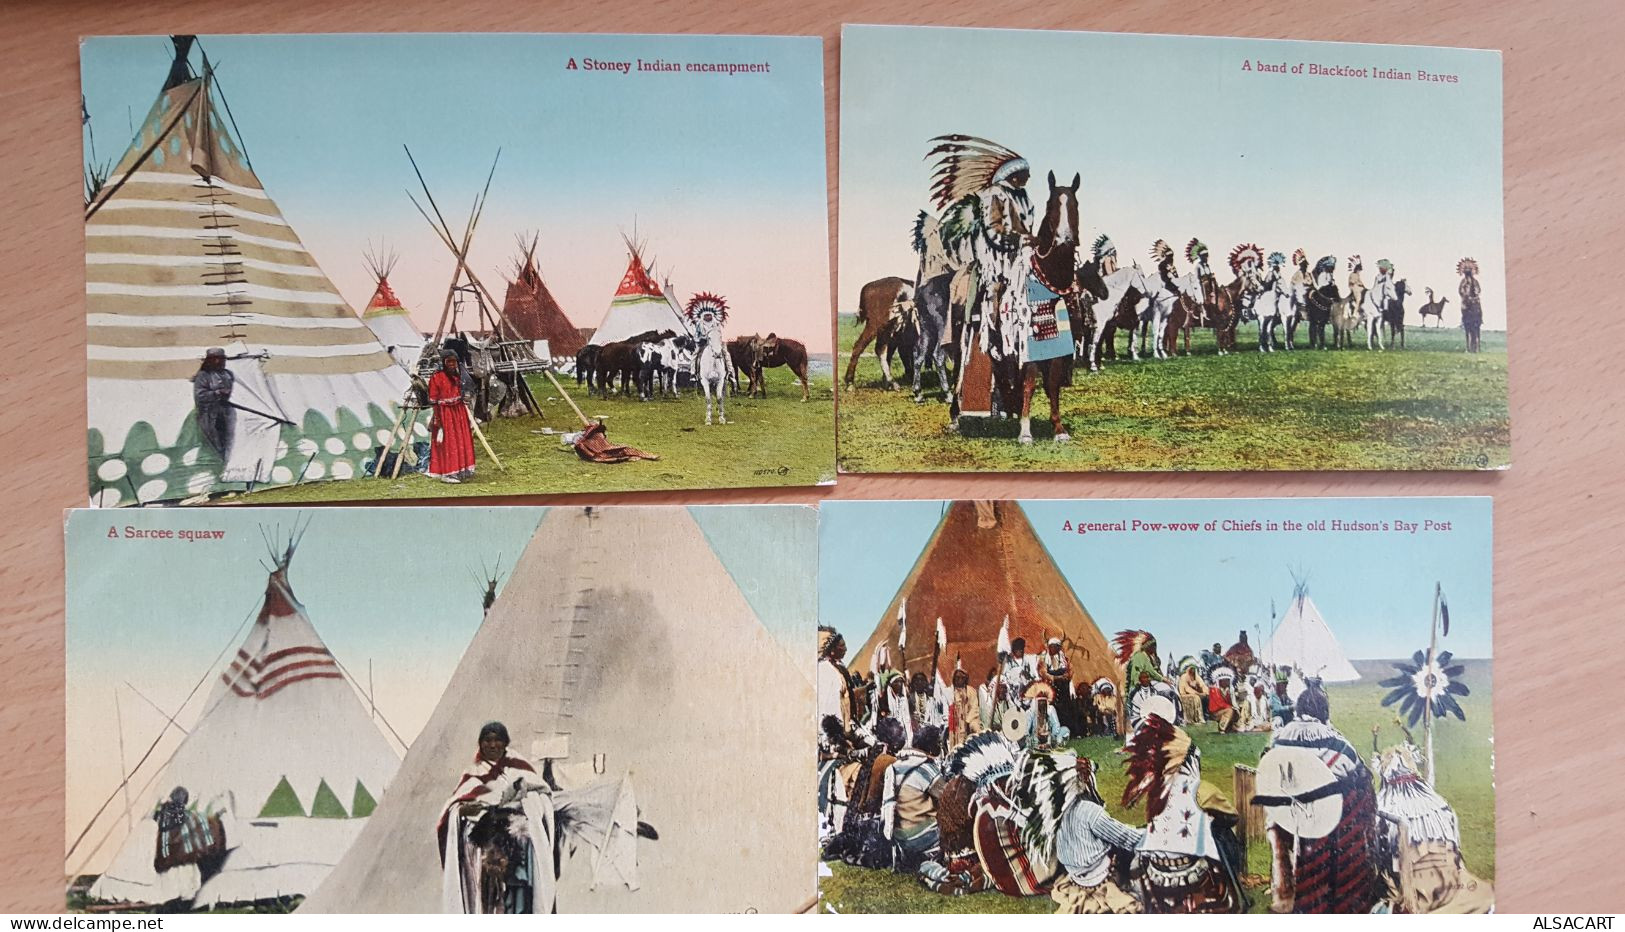 7 Cartes Postales Indiens D'amérique - Native Americans